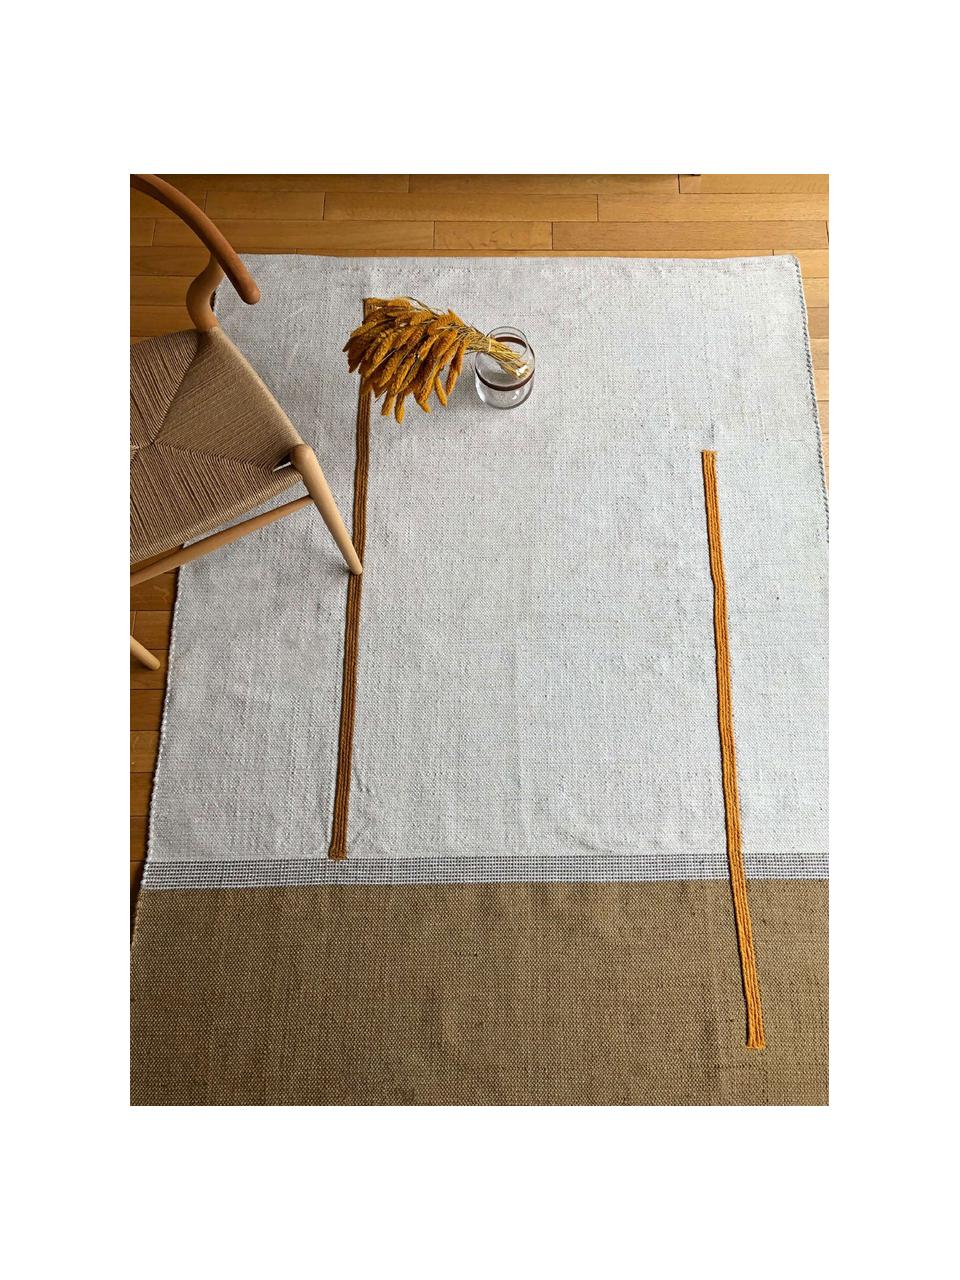 Alfombra artesanal de algodón y yute Atlas, Algodón, yute, Blanco crudo, tonos marrones, An 110 x L 160 cm (Tamaño S)